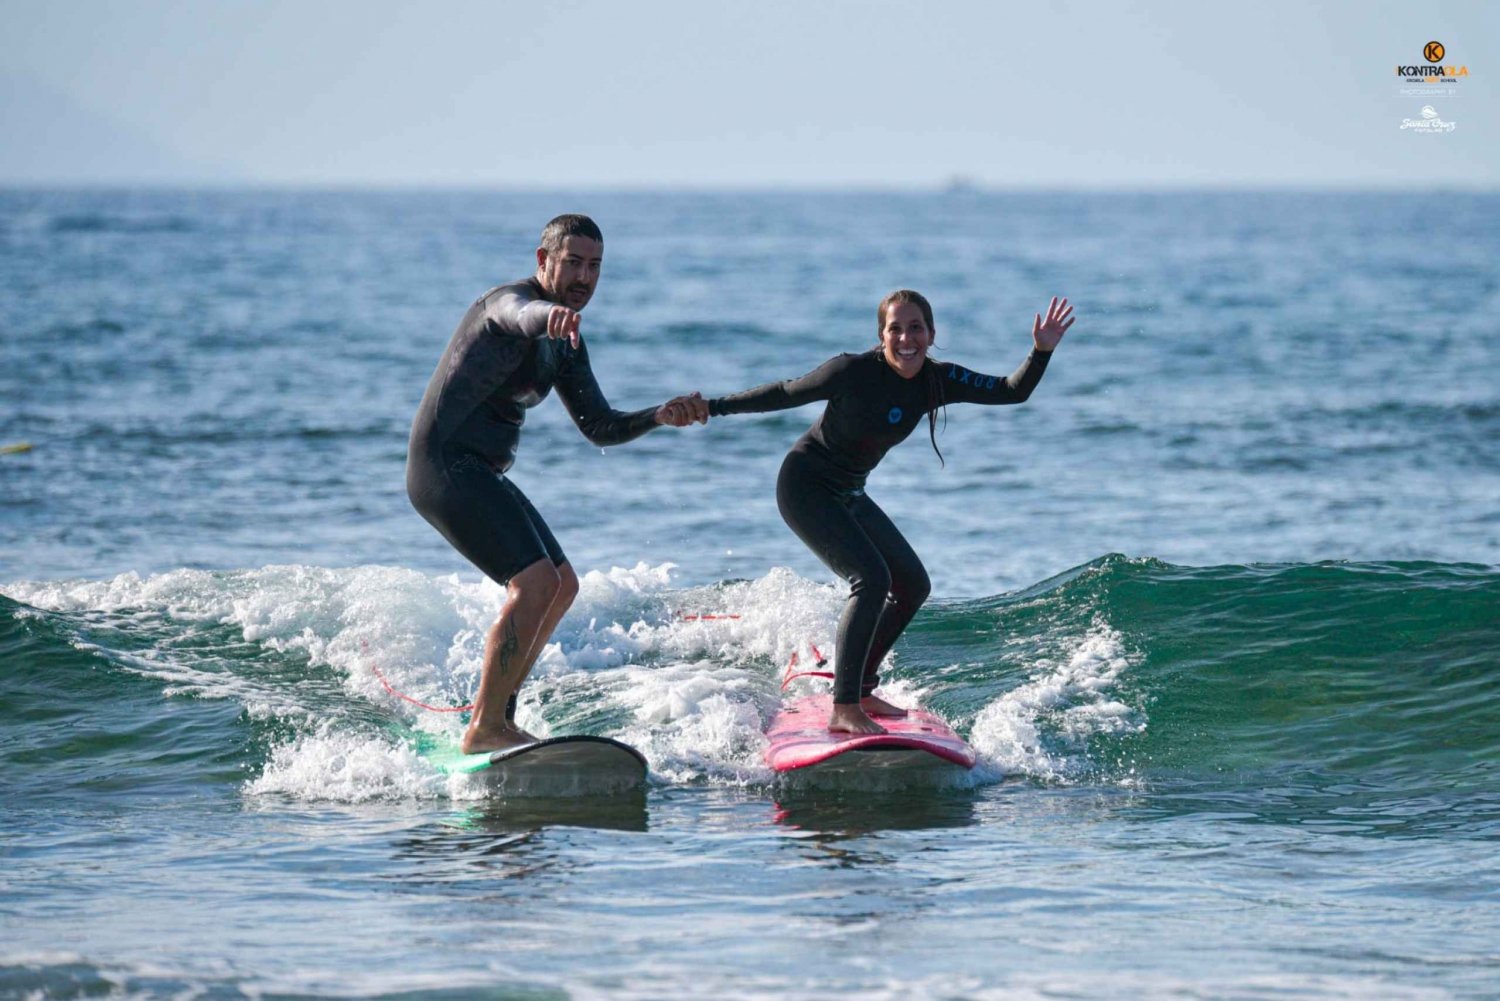 Playa de las Américas: Private or Small-Group Surf Lesson